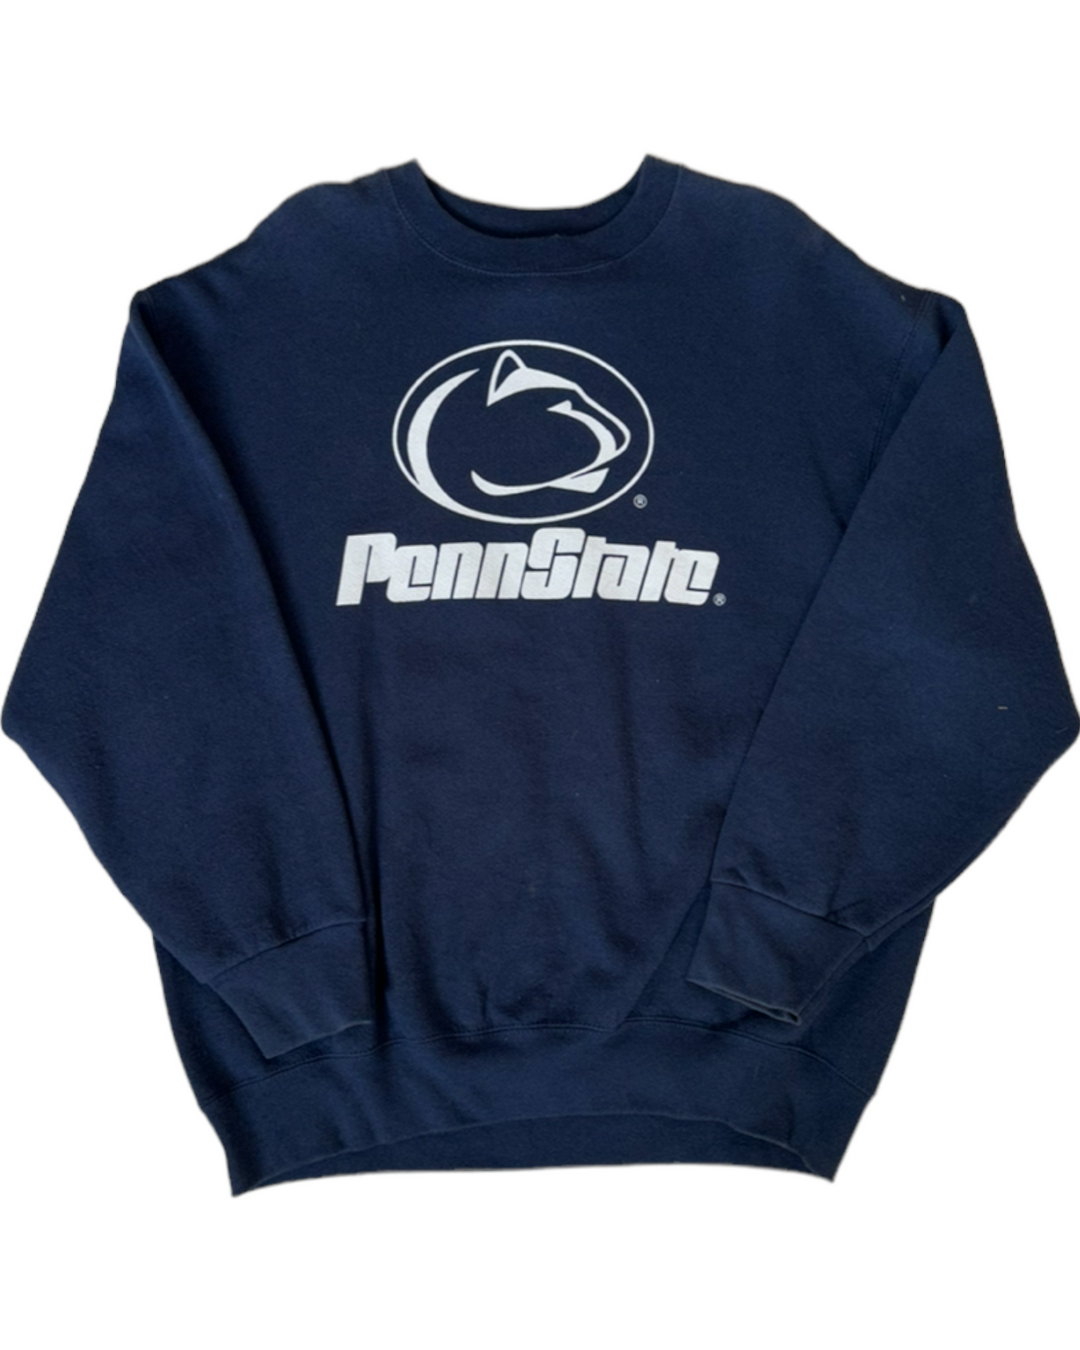 Penn State Vintage Sweatshirt